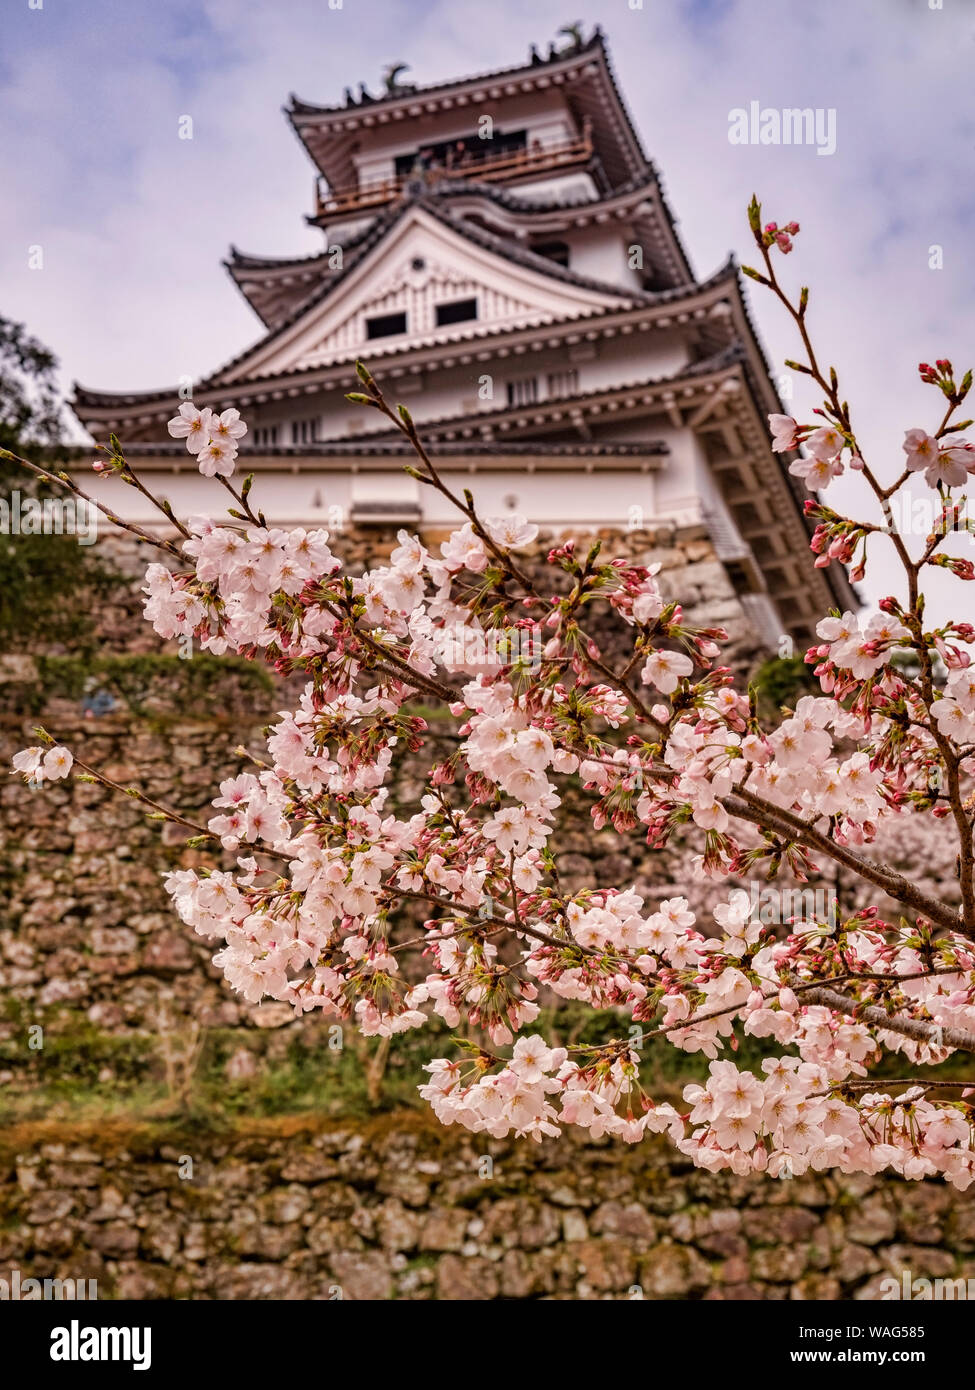 La fioritura dei ciliegi nel parco del Castello di Kochi, Giappone, con la principale tenere dietro. Foto Stock